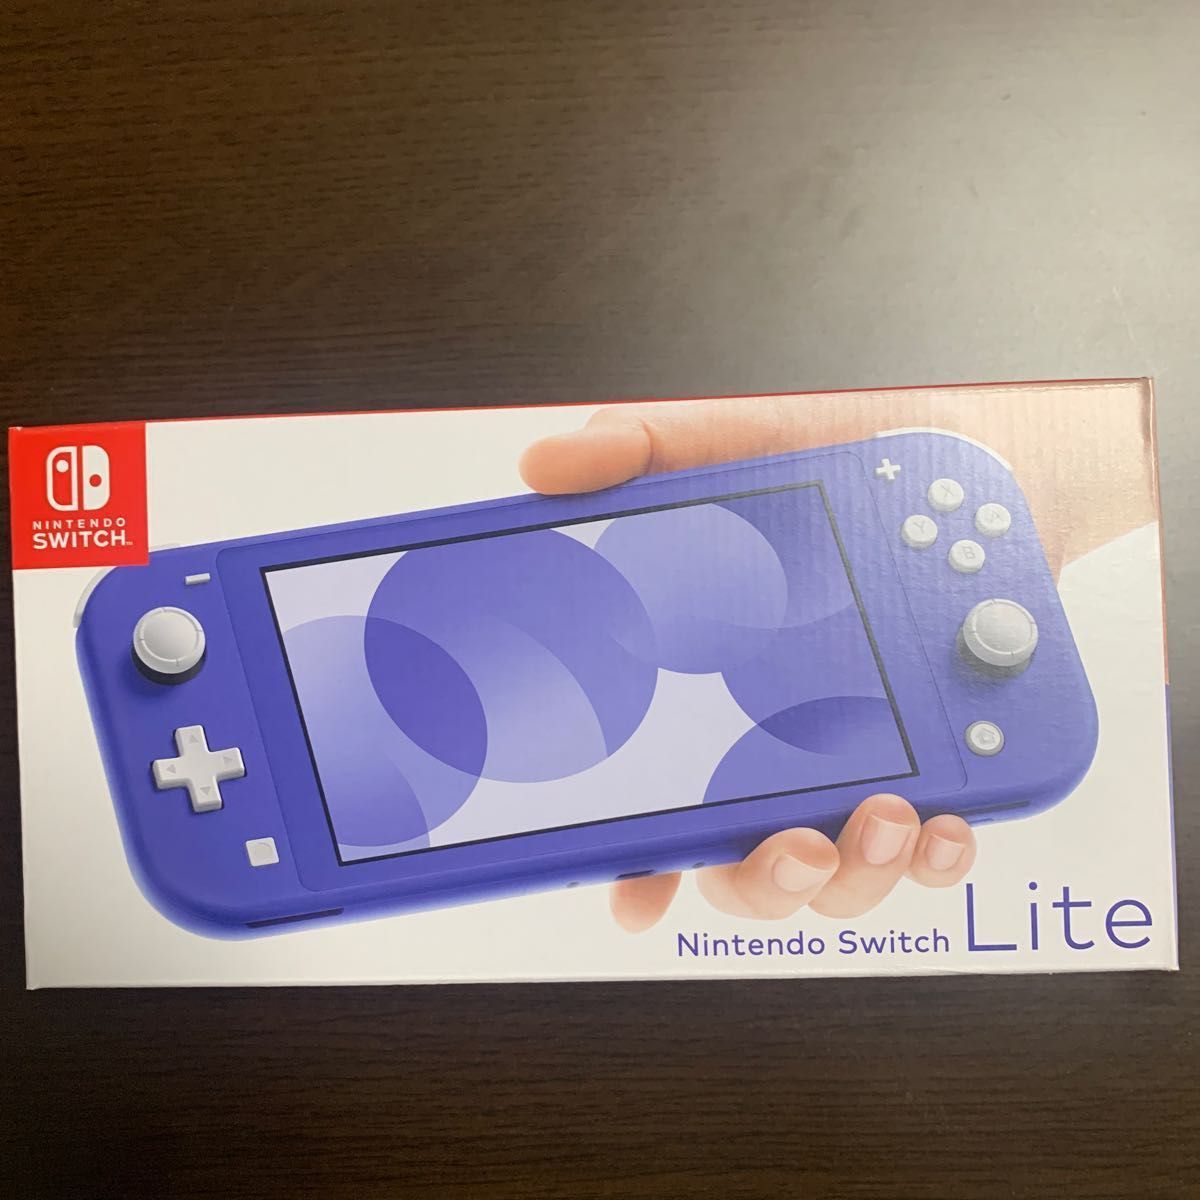 らしき】 Nintendo Switch Lite ブルー ニンテンドースイッチライト LiEhp-m54877333674 ではありま